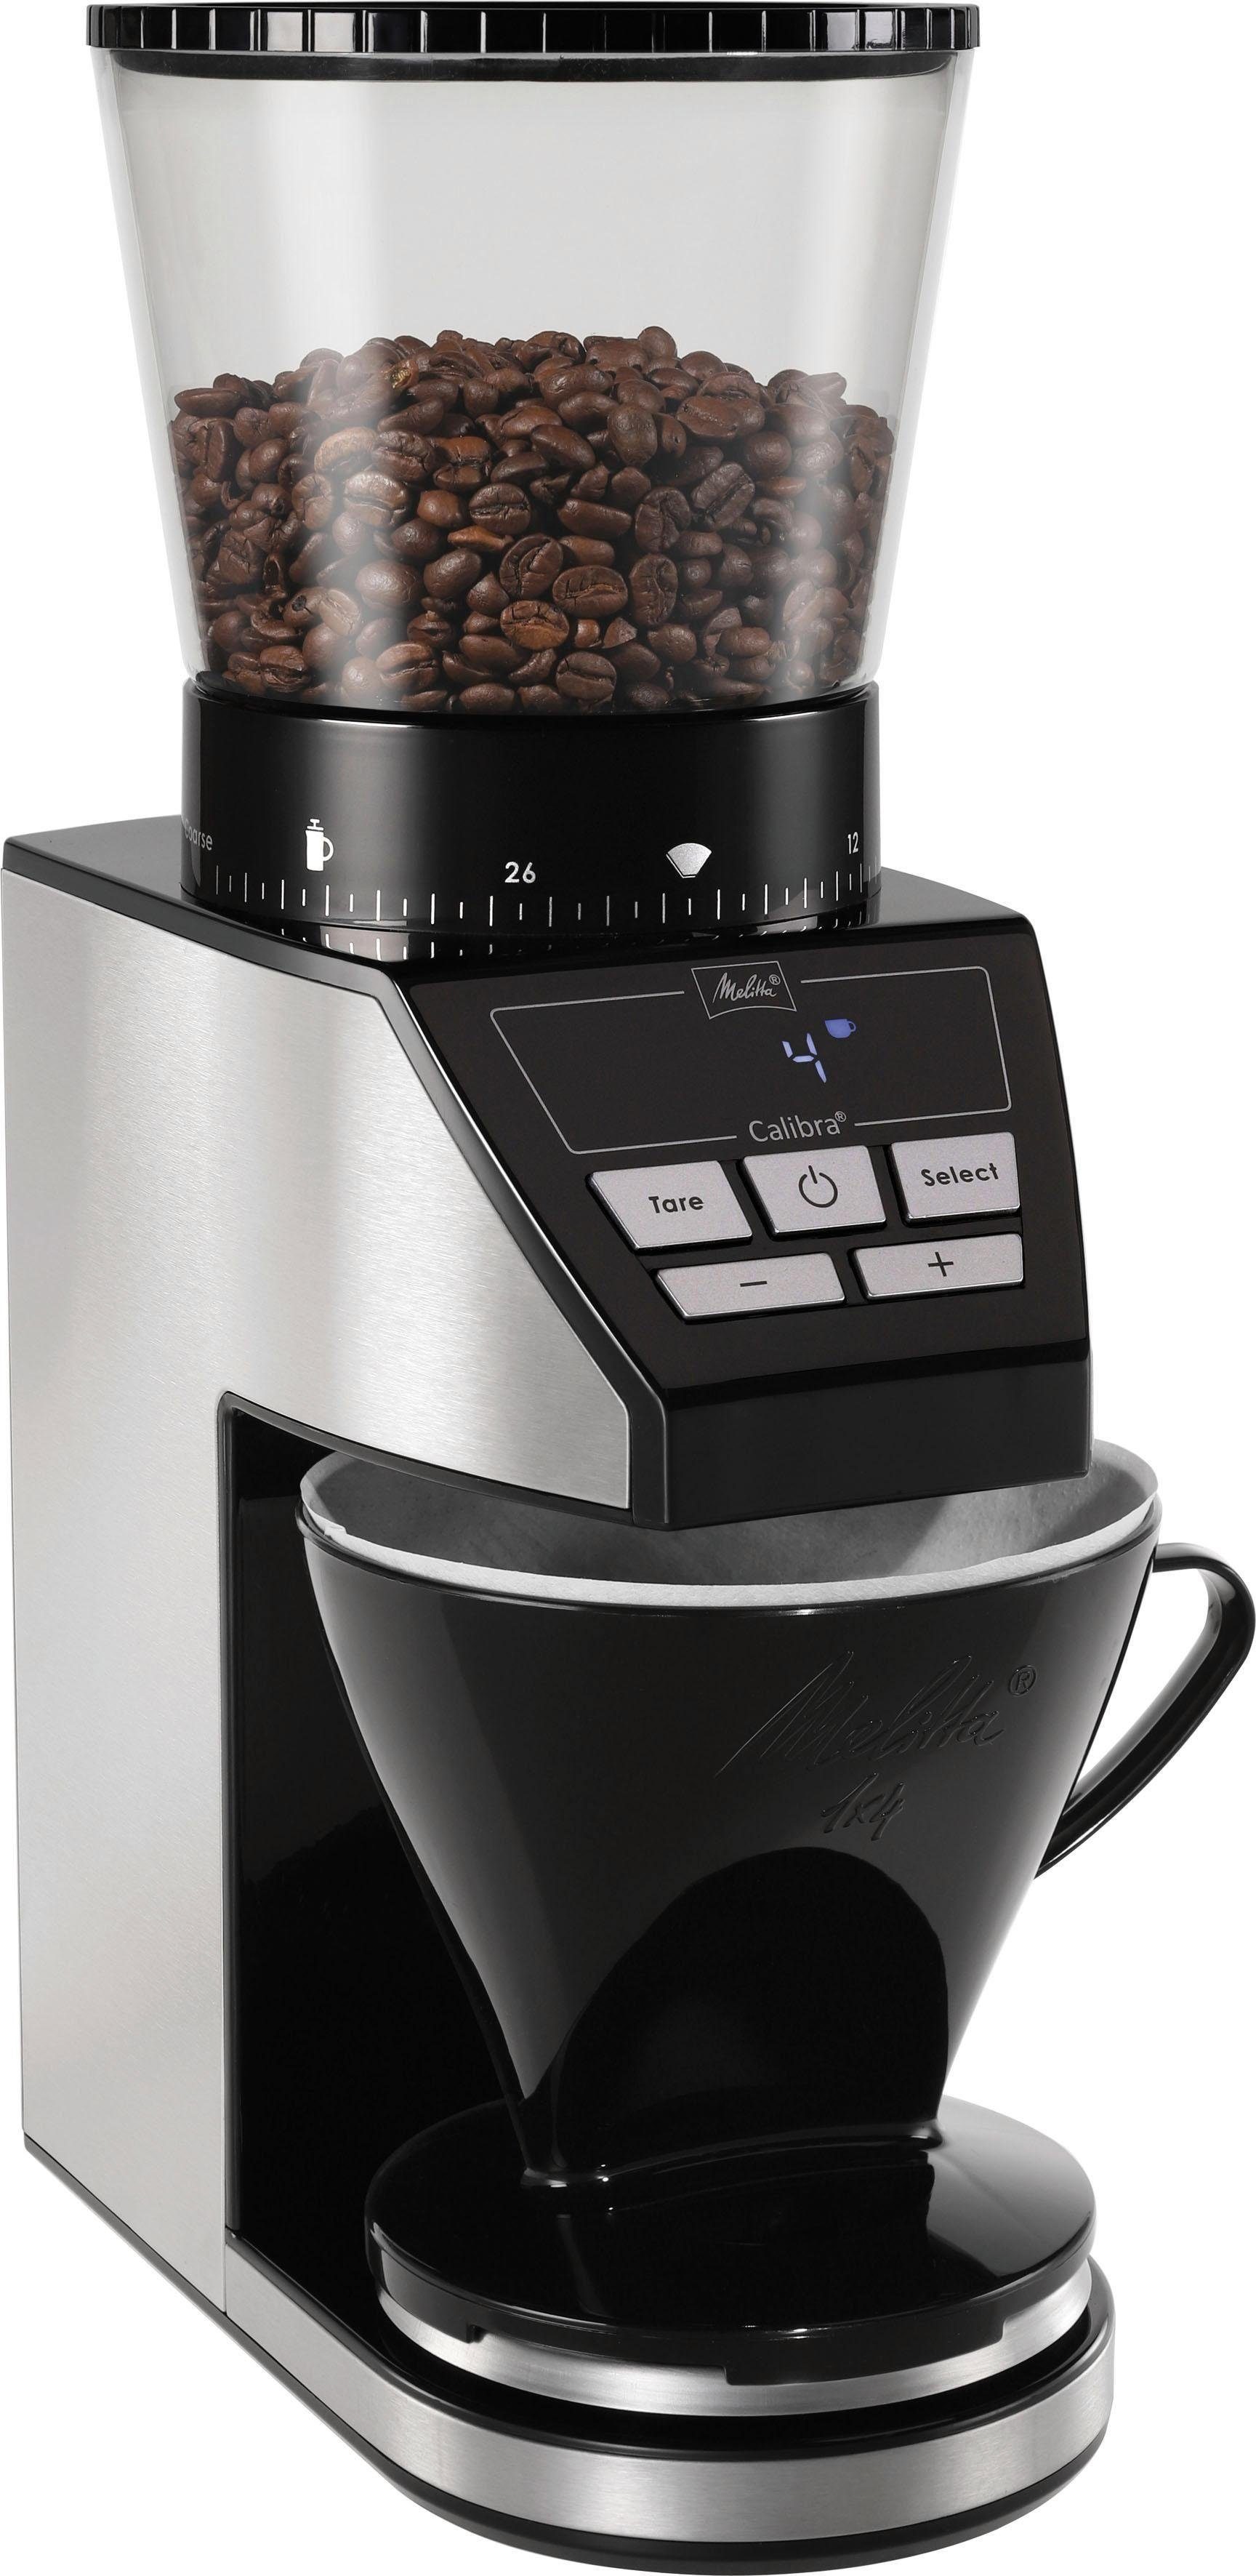 Melitta g 375 Kaffeemühle W, Calibra Kegelmahlwerk, 160 1027-01 schwarz-Edelstahl, Bohnenbehälter